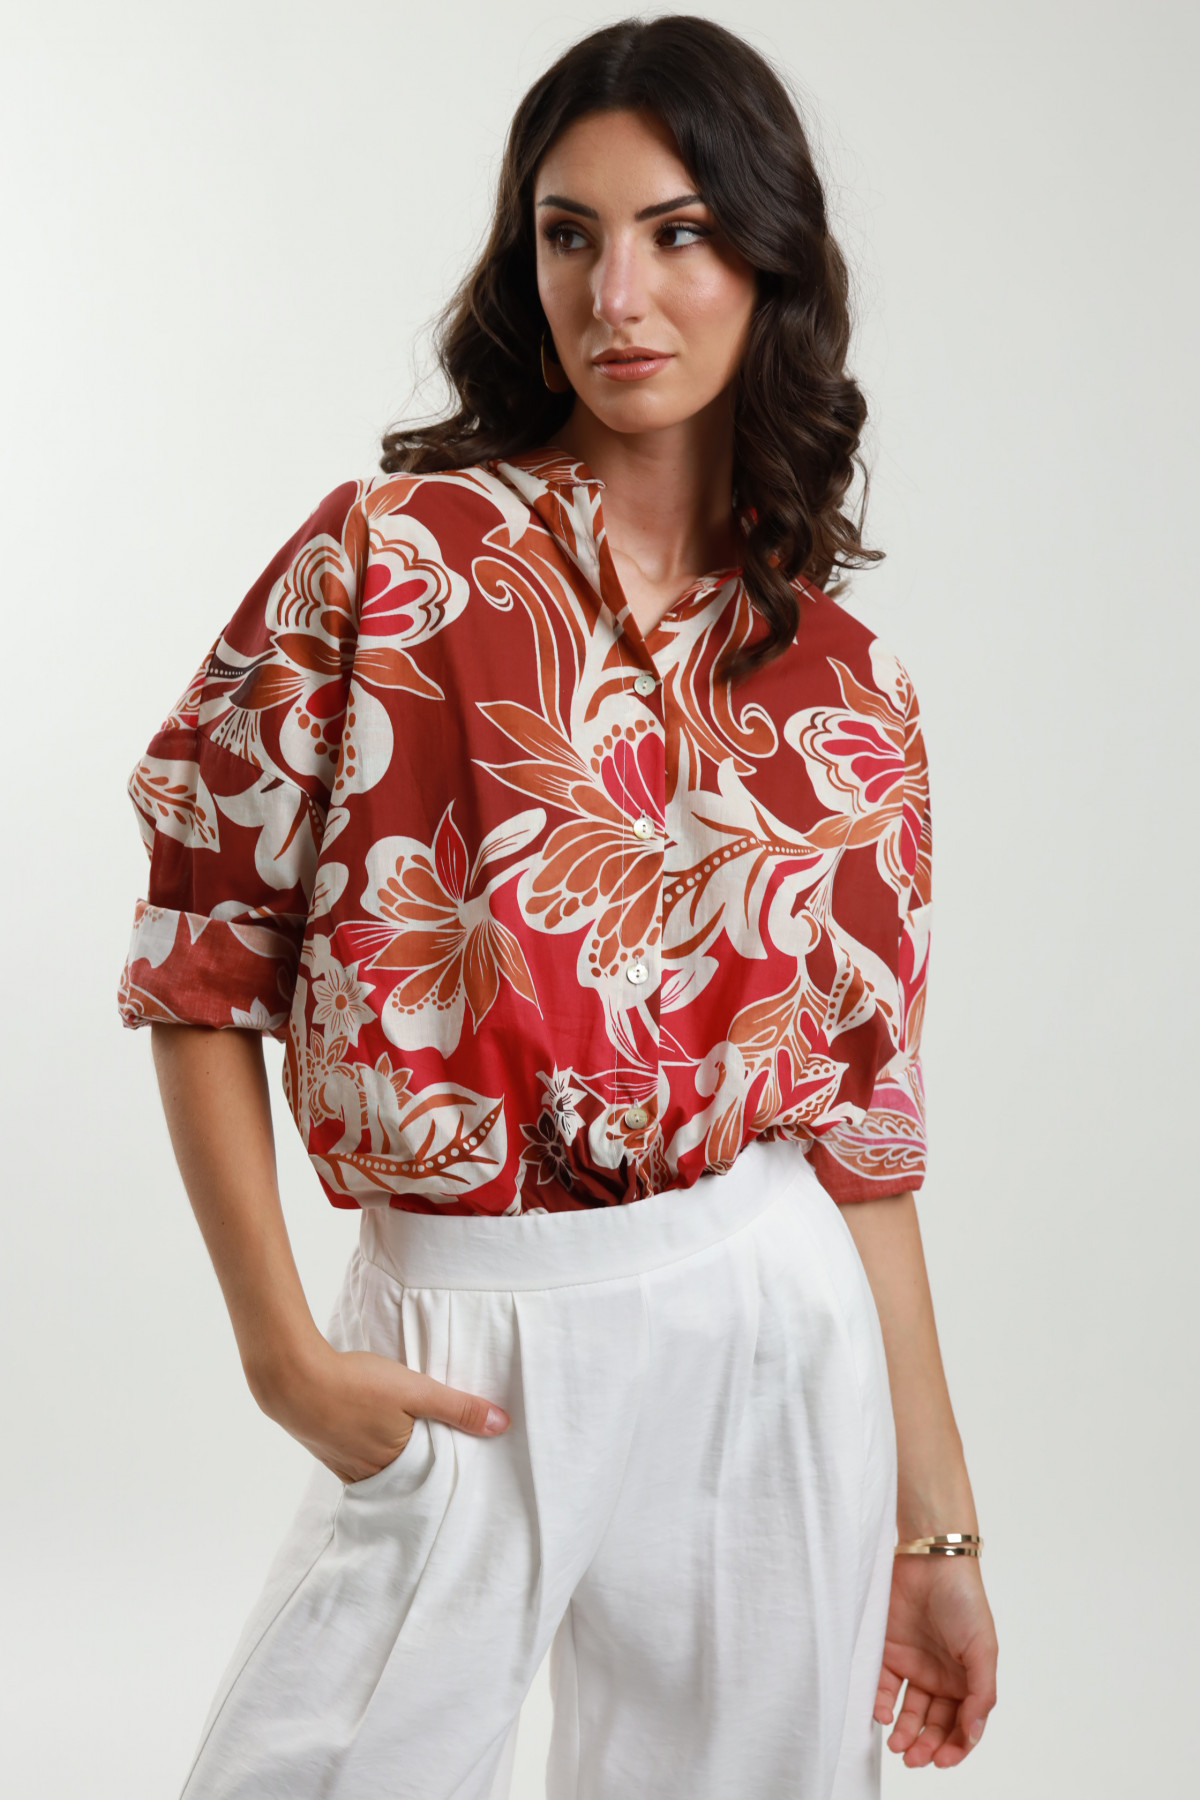 Floral Patterned Shirt